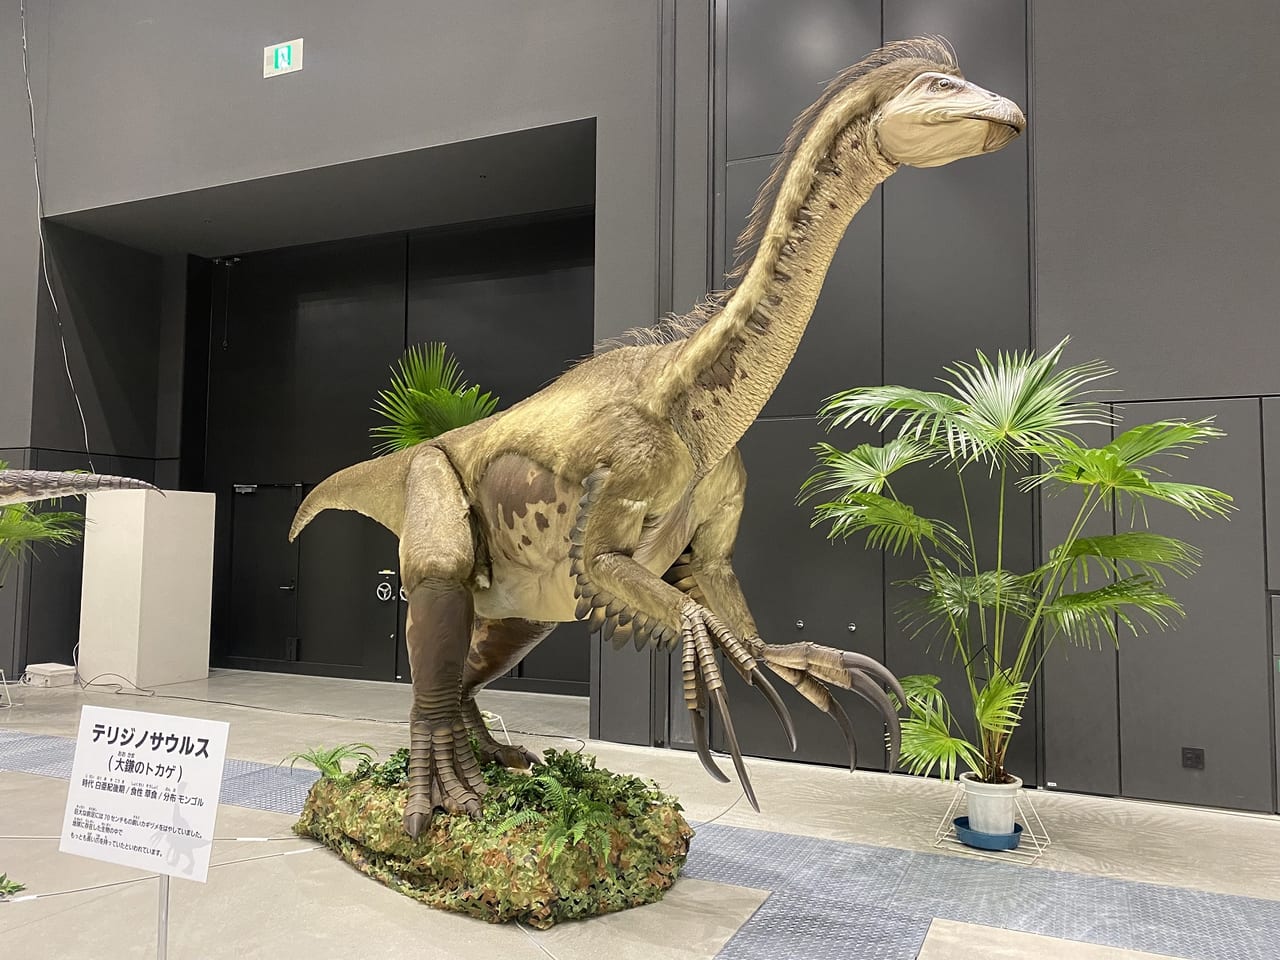 東京たま大恐竜博